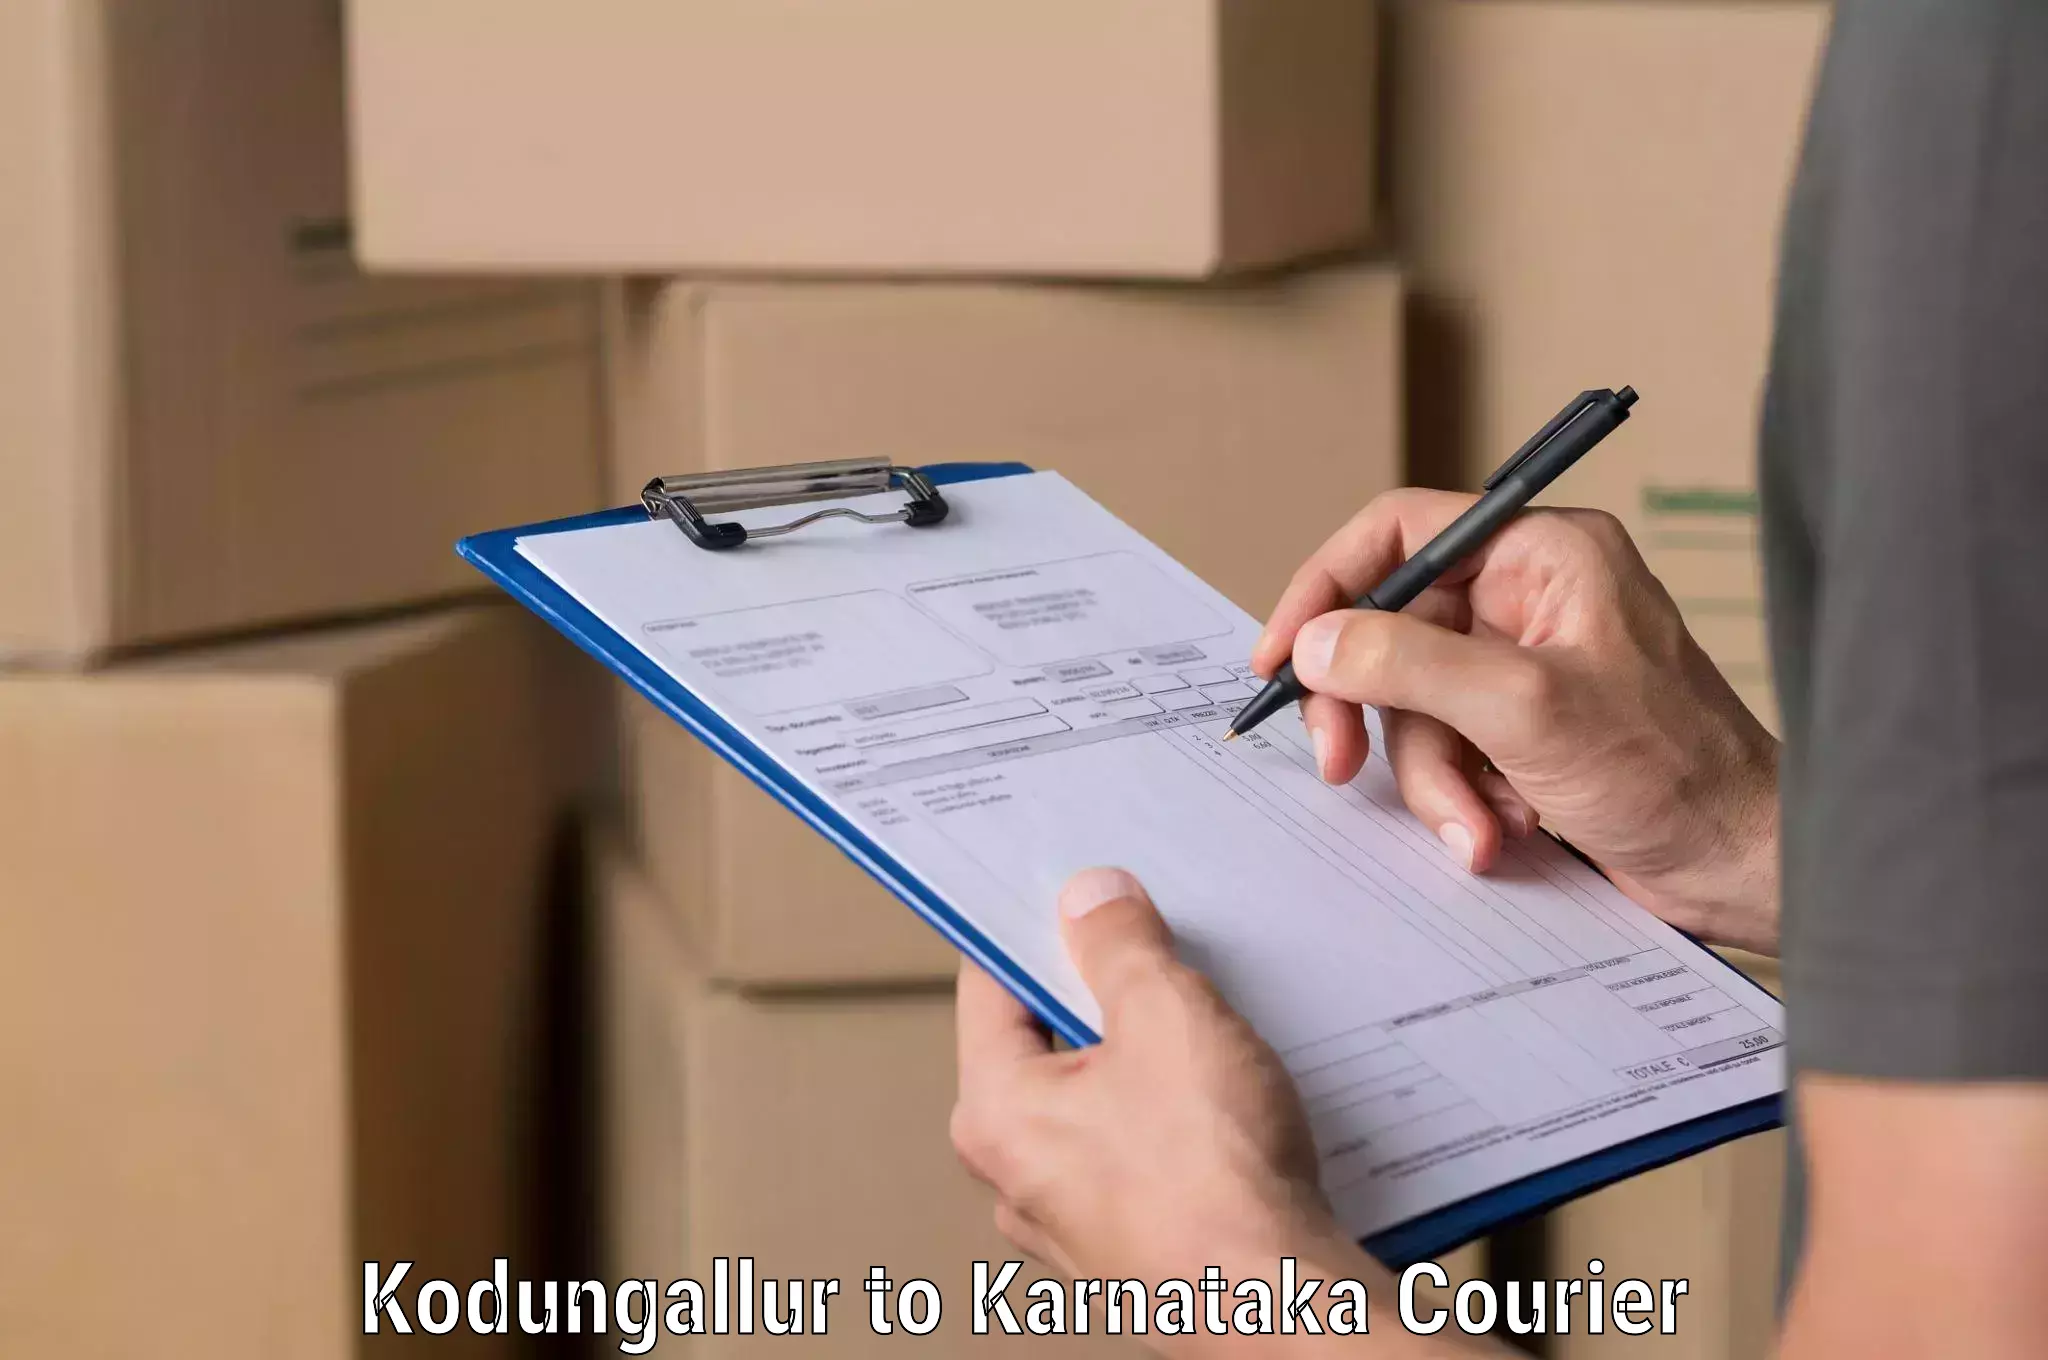 Modern courier technology in Kodungallur to Pavagada